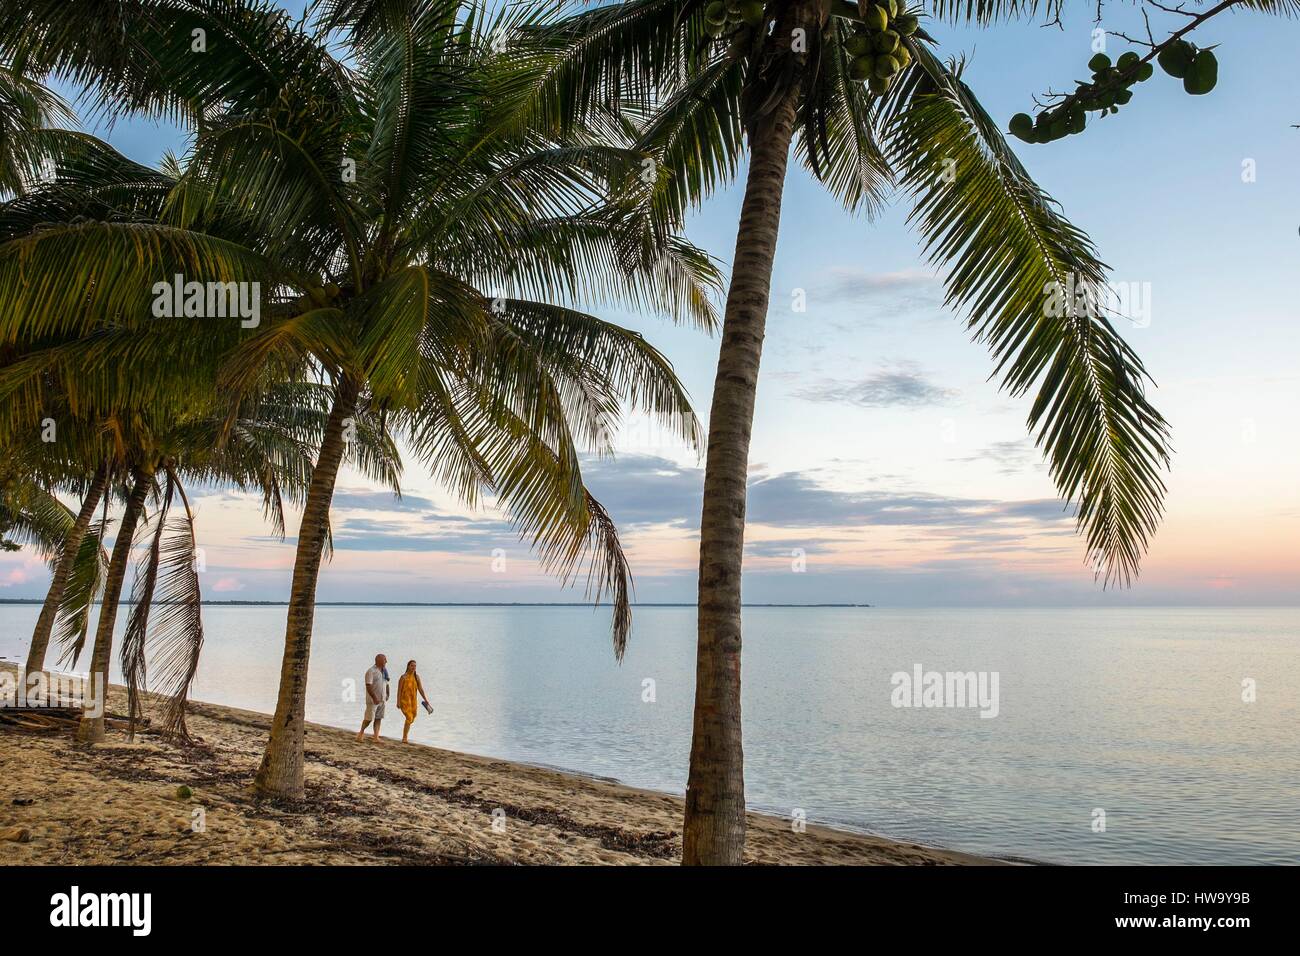 Belize, Stann Creek district, Hopkins, garifuna piccolo villaggio di pescatori e la spiaggia Foto Stock